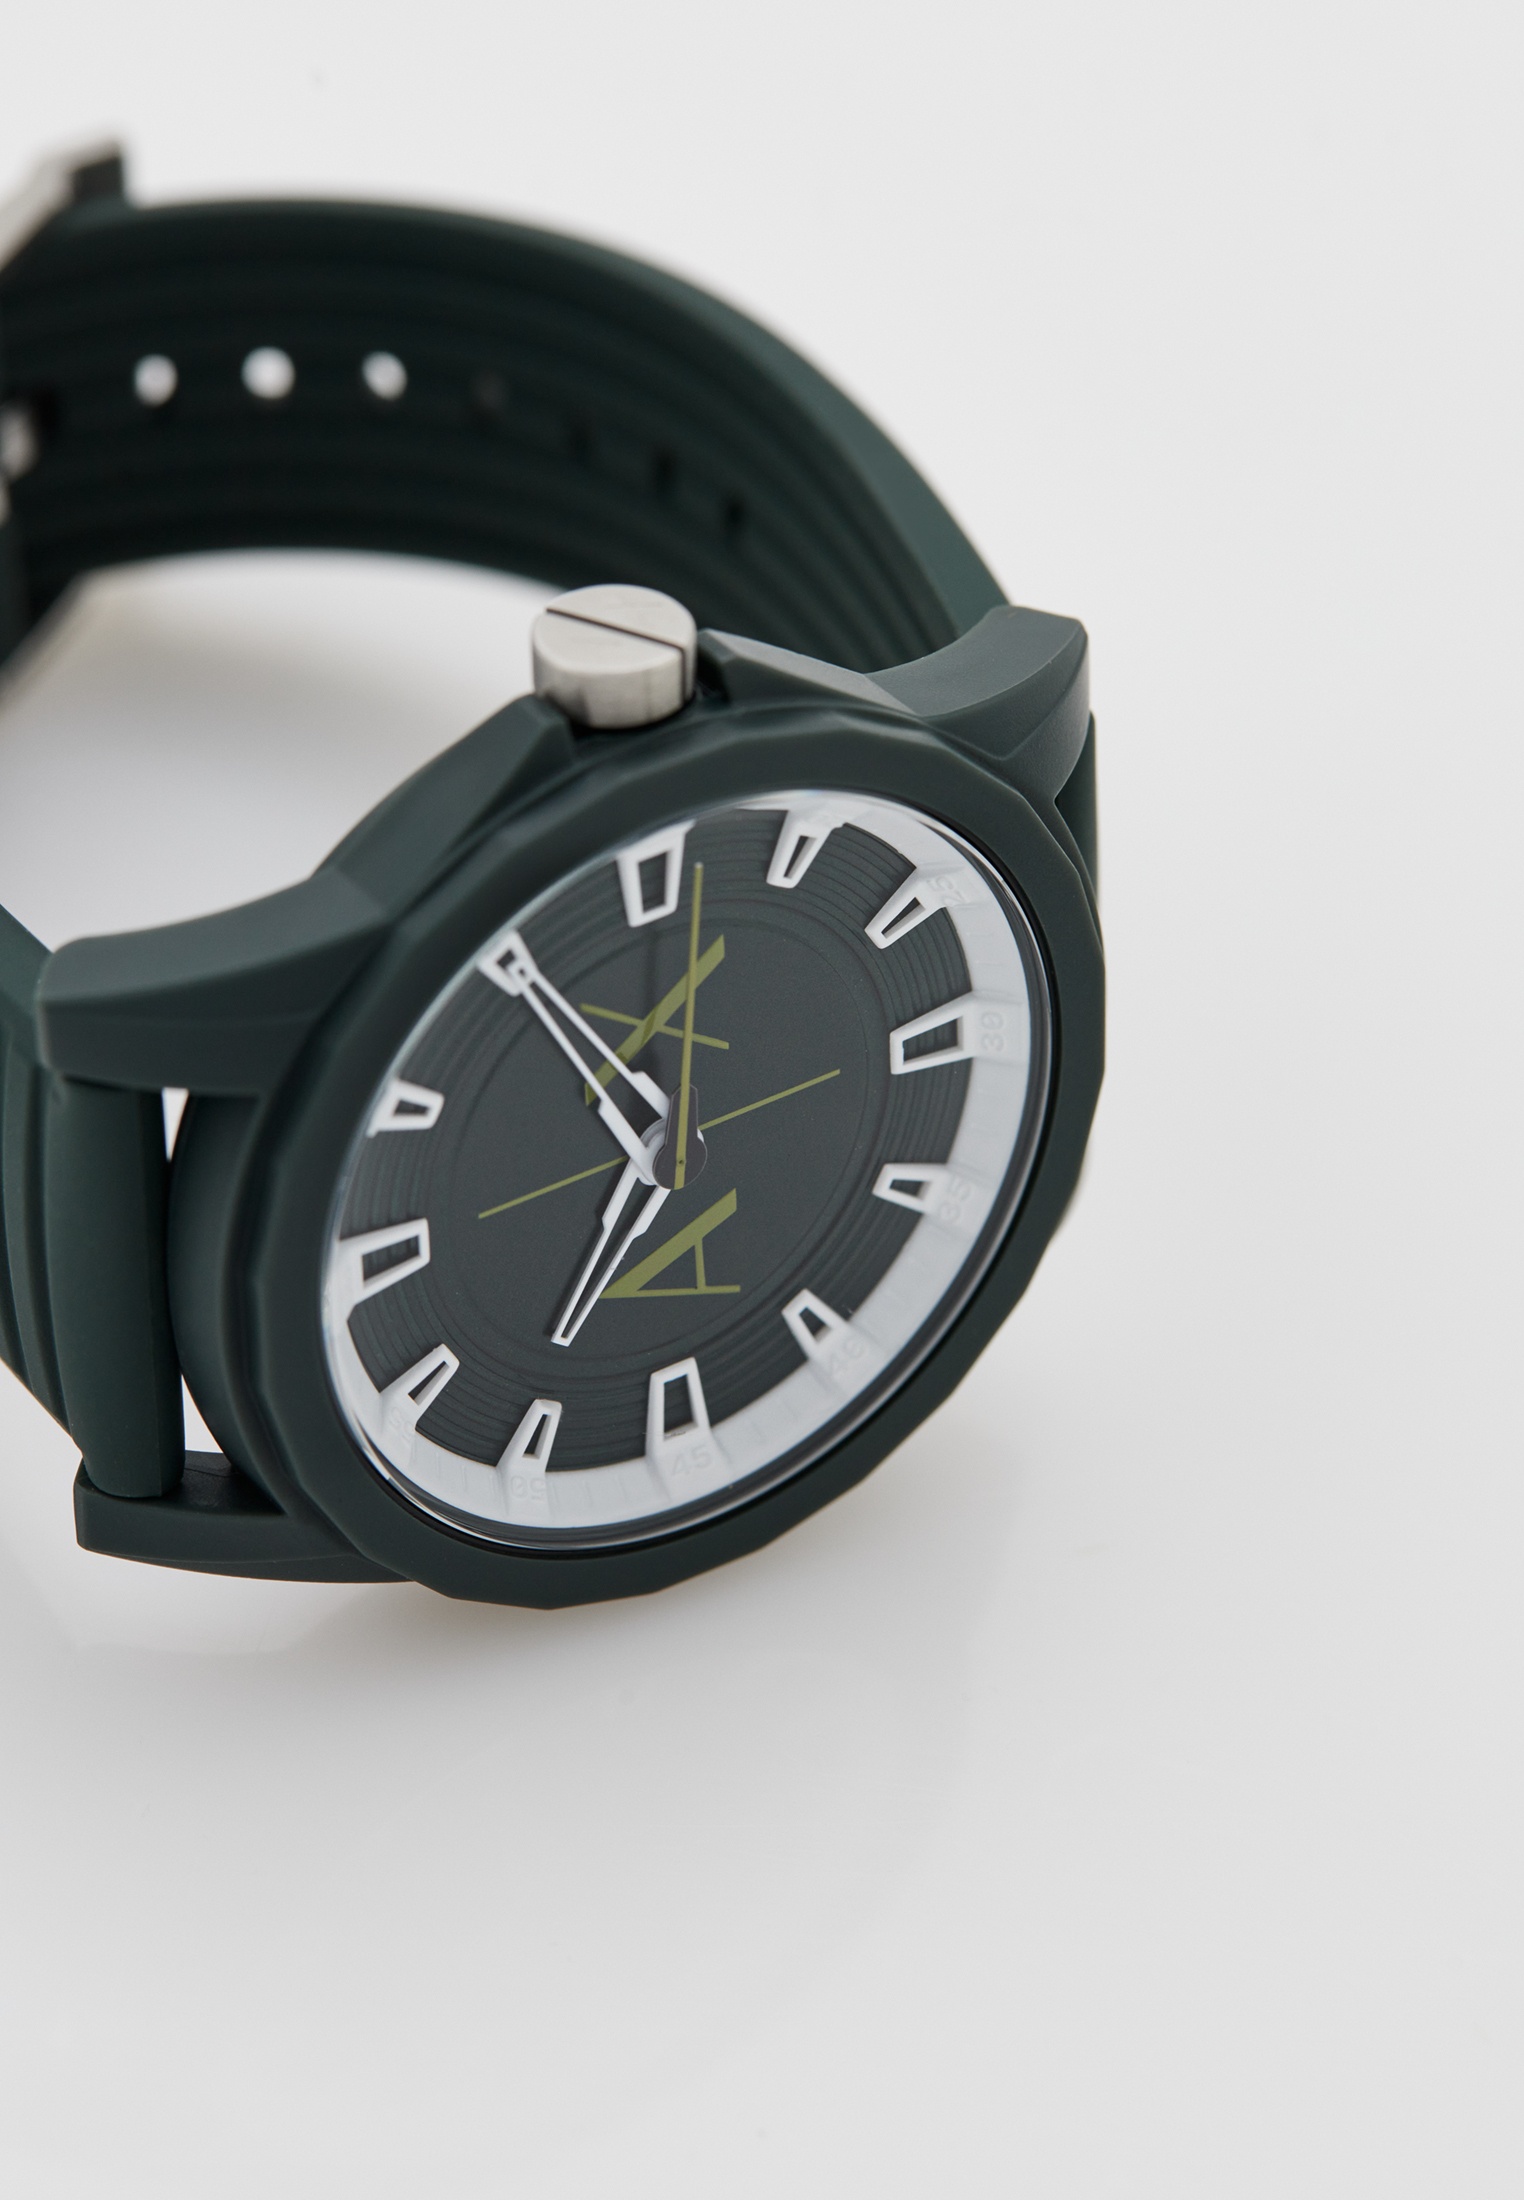 Часы Armani Exchange AX2530, цвет: зеленый, RTLACZ547501 — купить в  интернет-магазине Lamoda